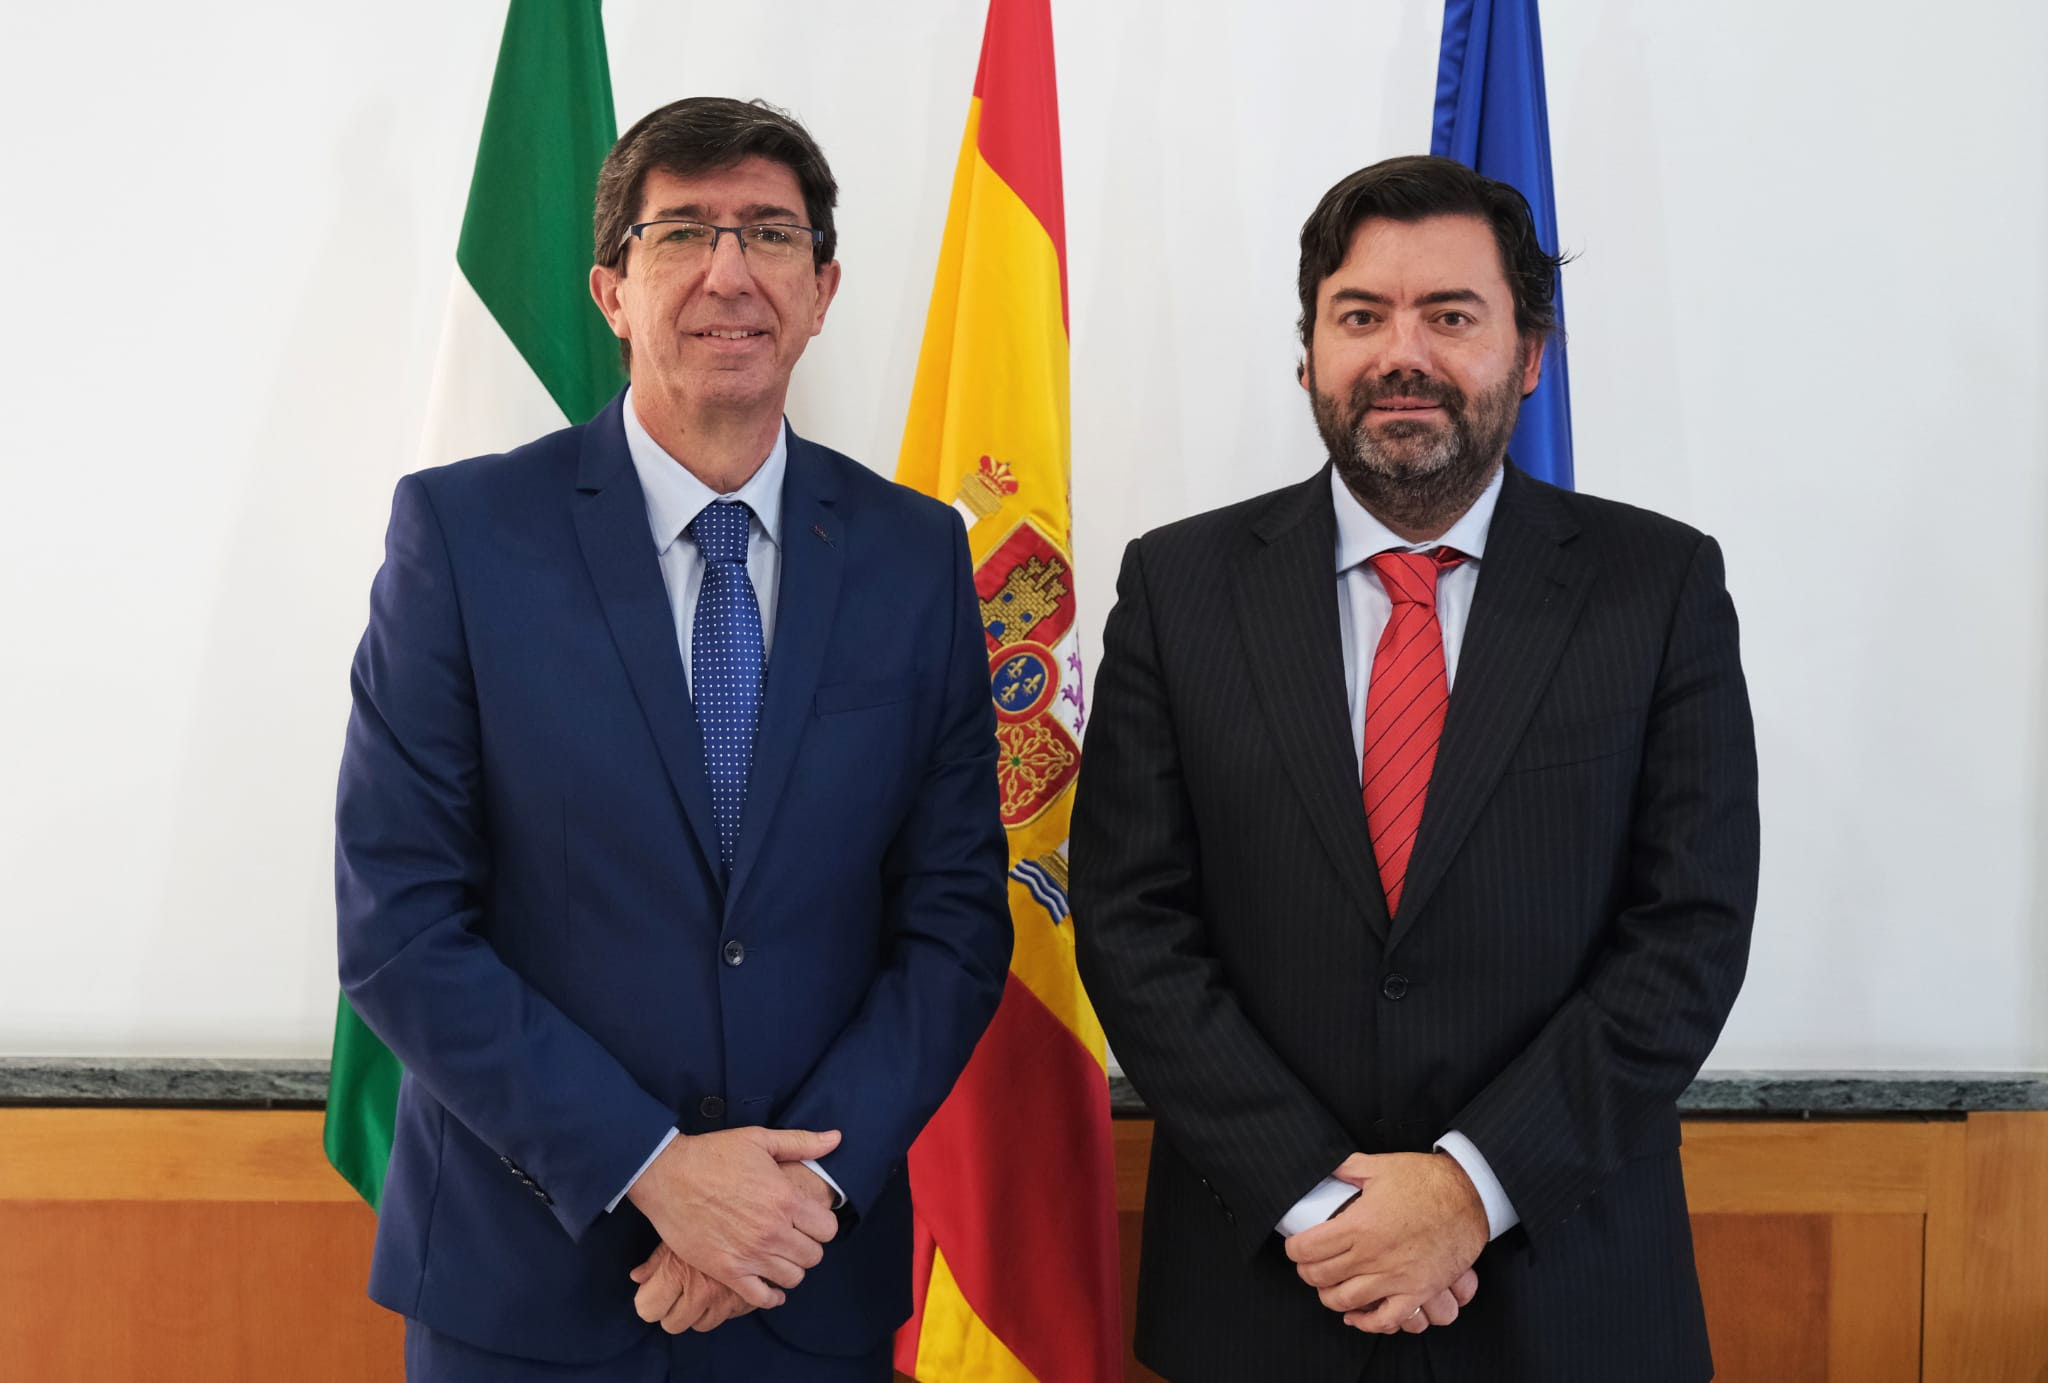 López-Sidro: “Ciudadanos afronta en Granada una nueva etapa ilusionante centrada en mejorar la economía familiar, el empleo y el bienestar de los granadinos”